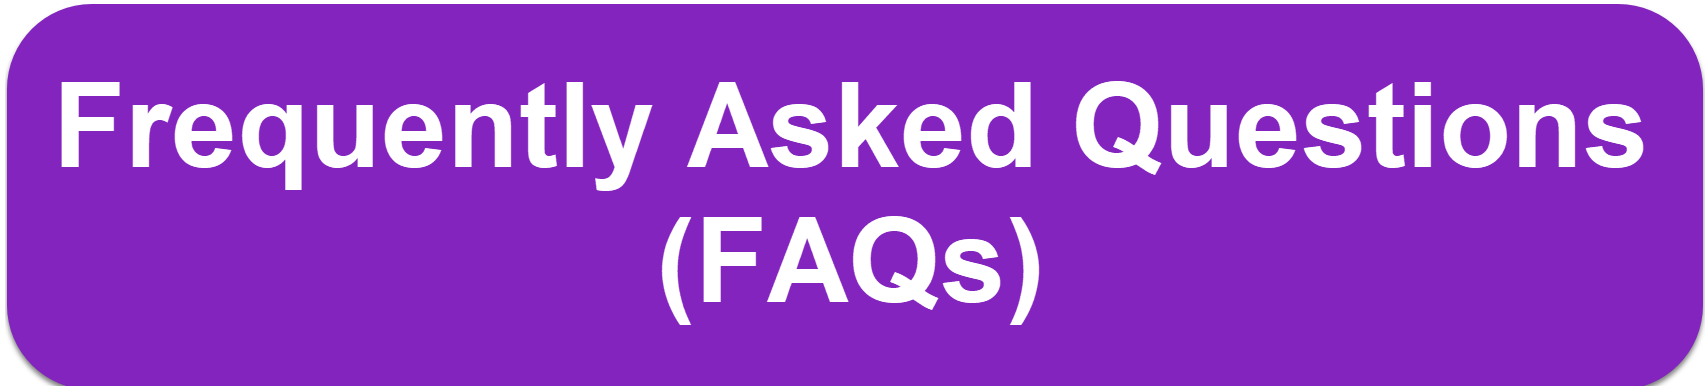 FAQ Button